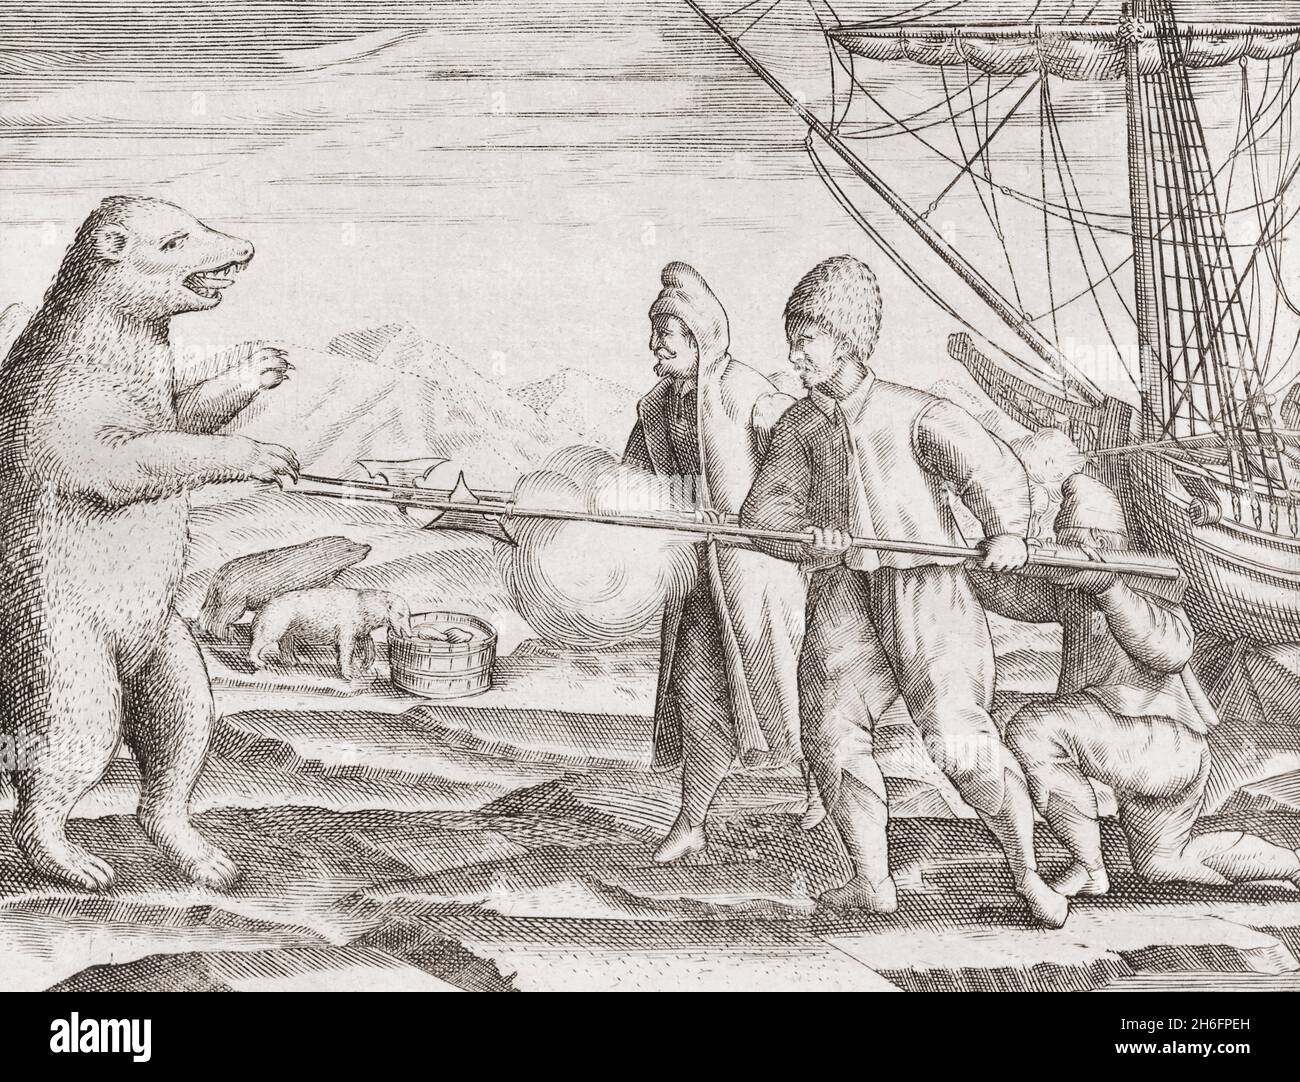 Seefahrer jagen Eisbären im arktischen Ozean im frühen 17. Jahrhundert. Aus einem Werk eines unbekannten Künstlers aus dem 17. Jahrhundert. Stockfoto